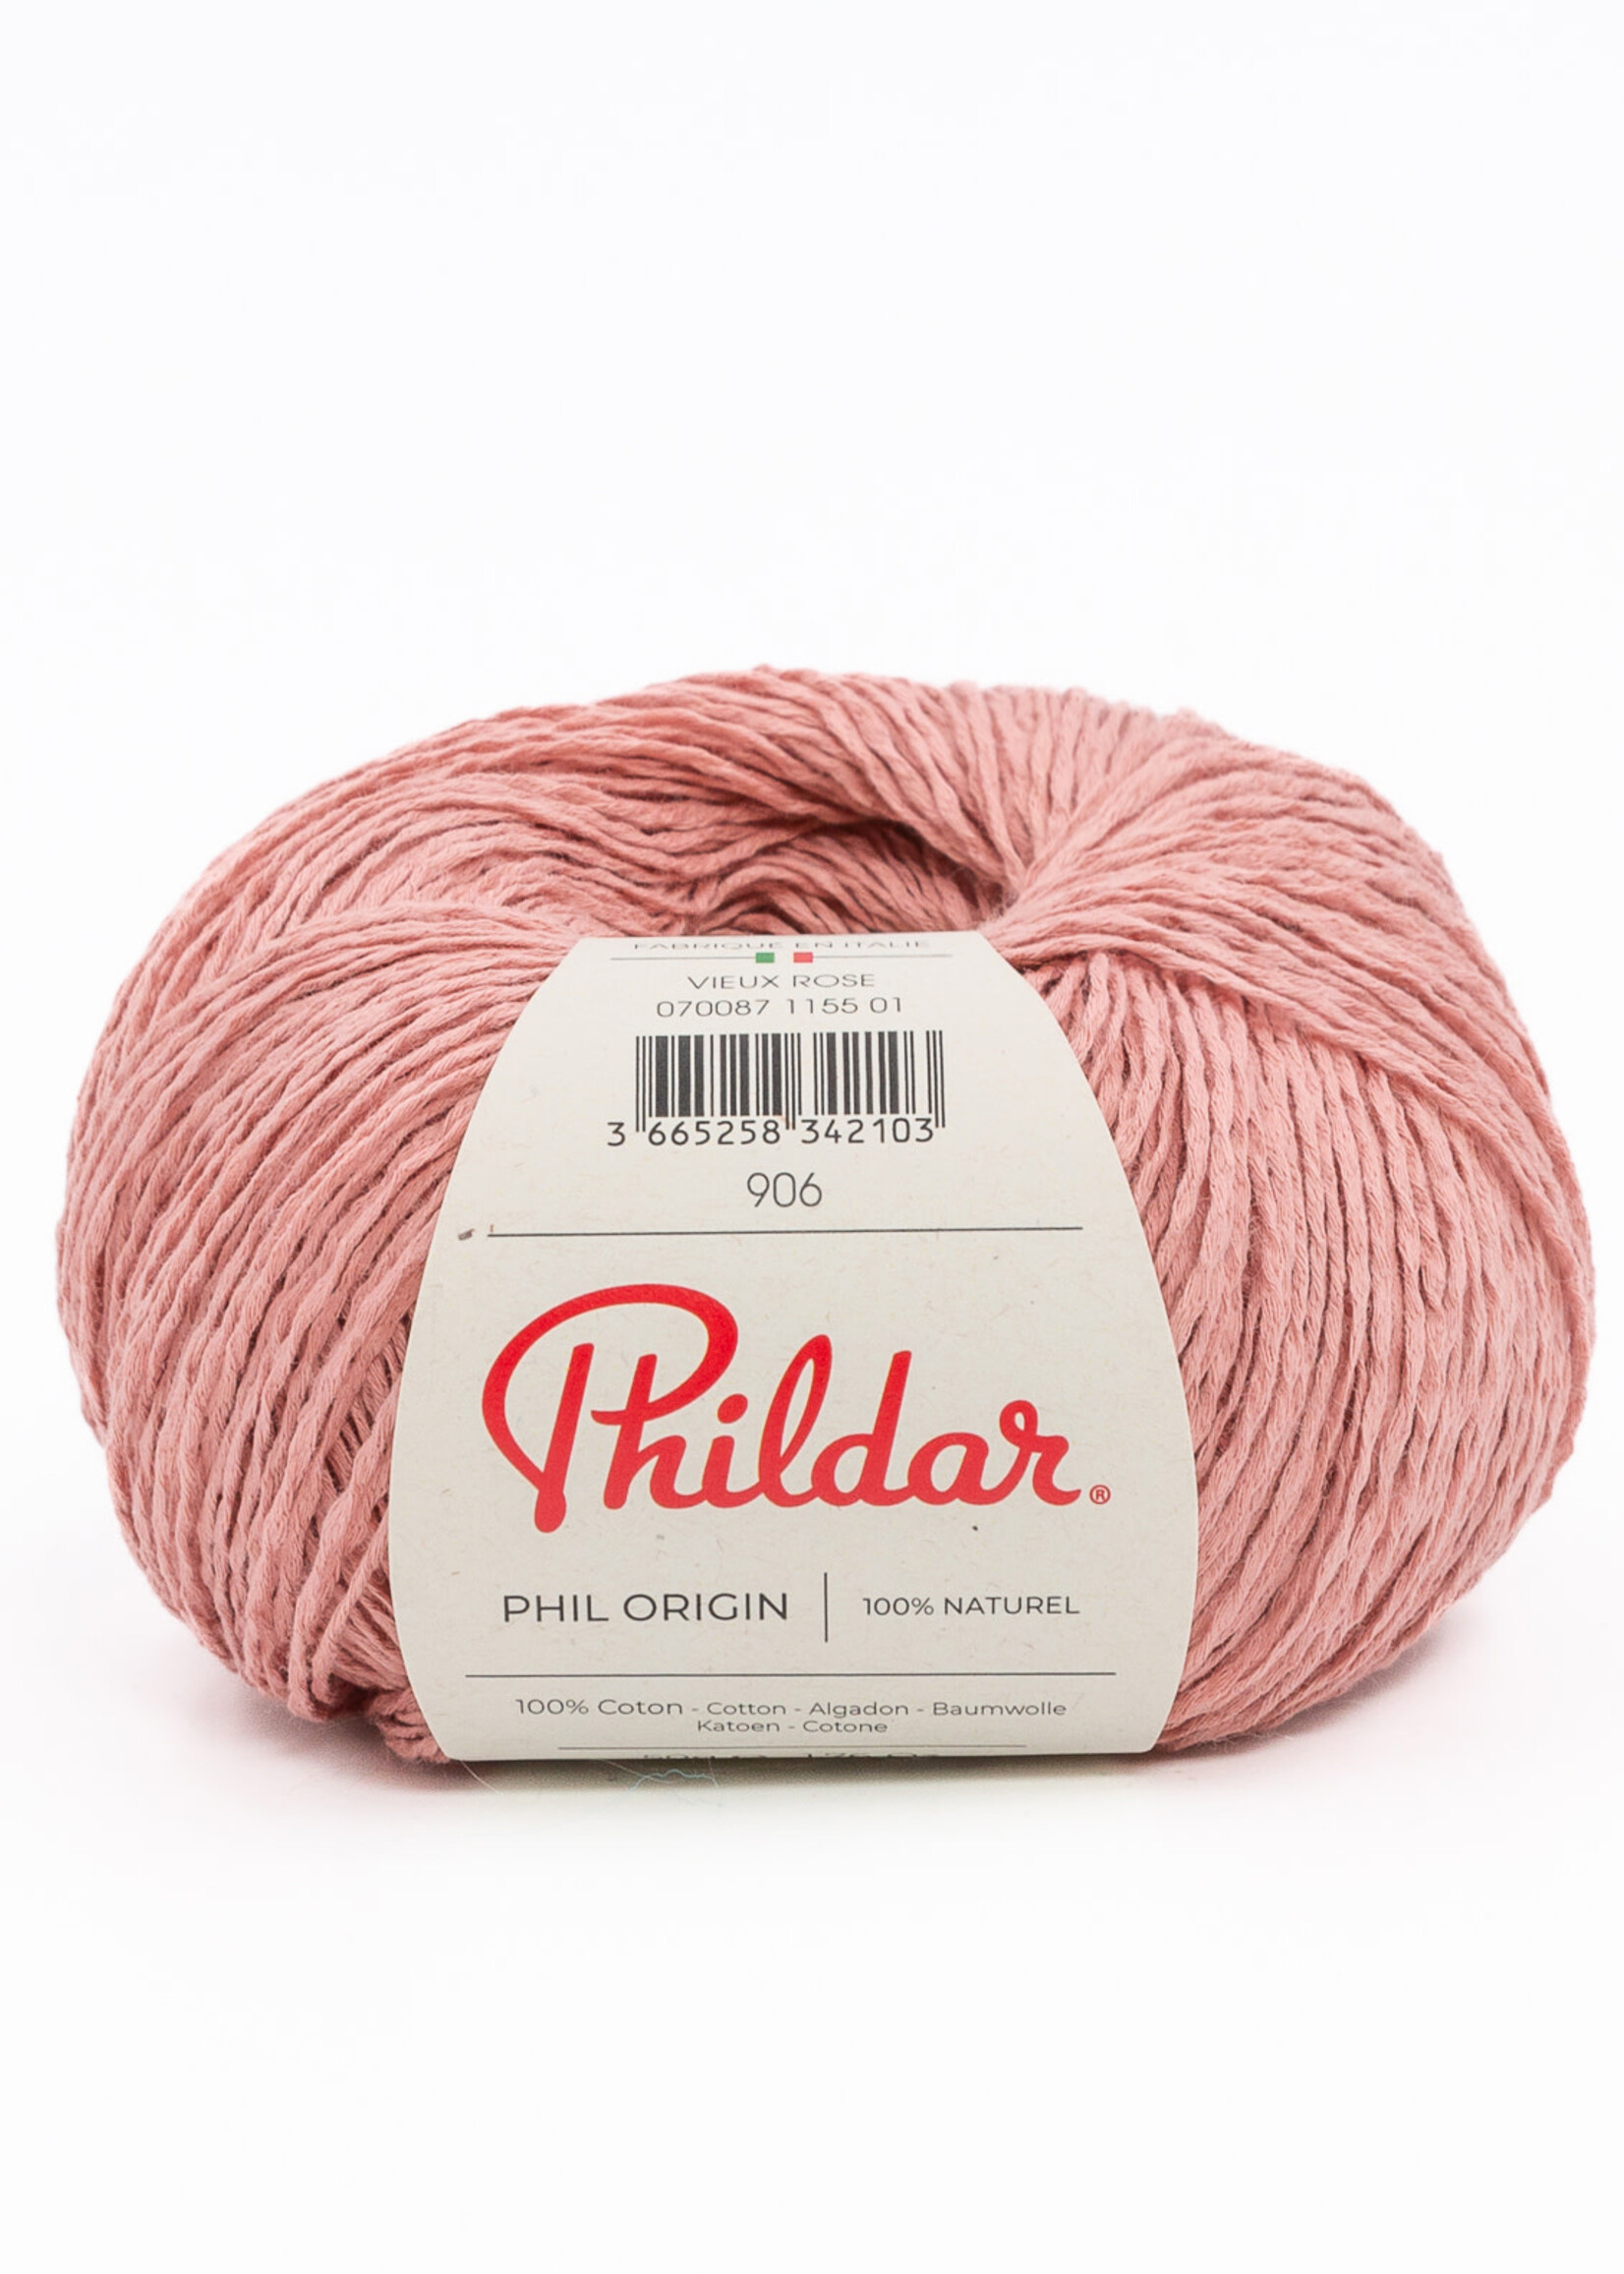 Phildar Phil Origin - Phildar -1155 vieux rose